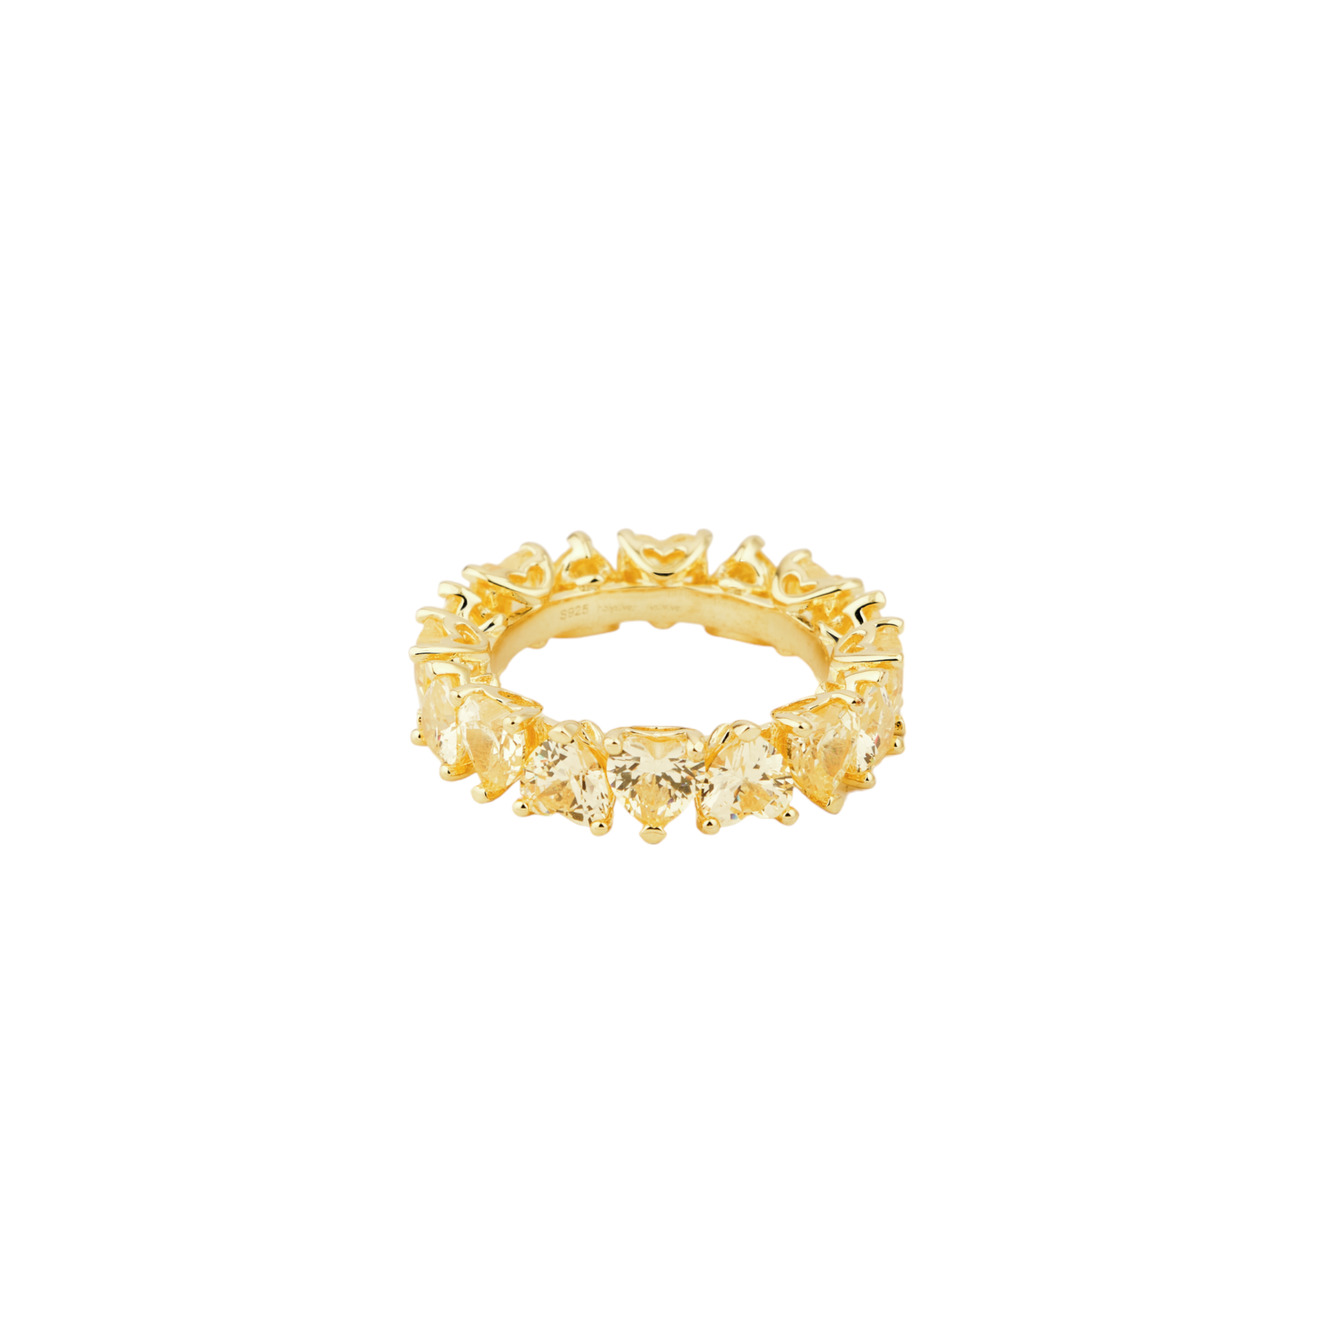 Holy Silver Тонкое кольцо из дорожки желтых кристаллов